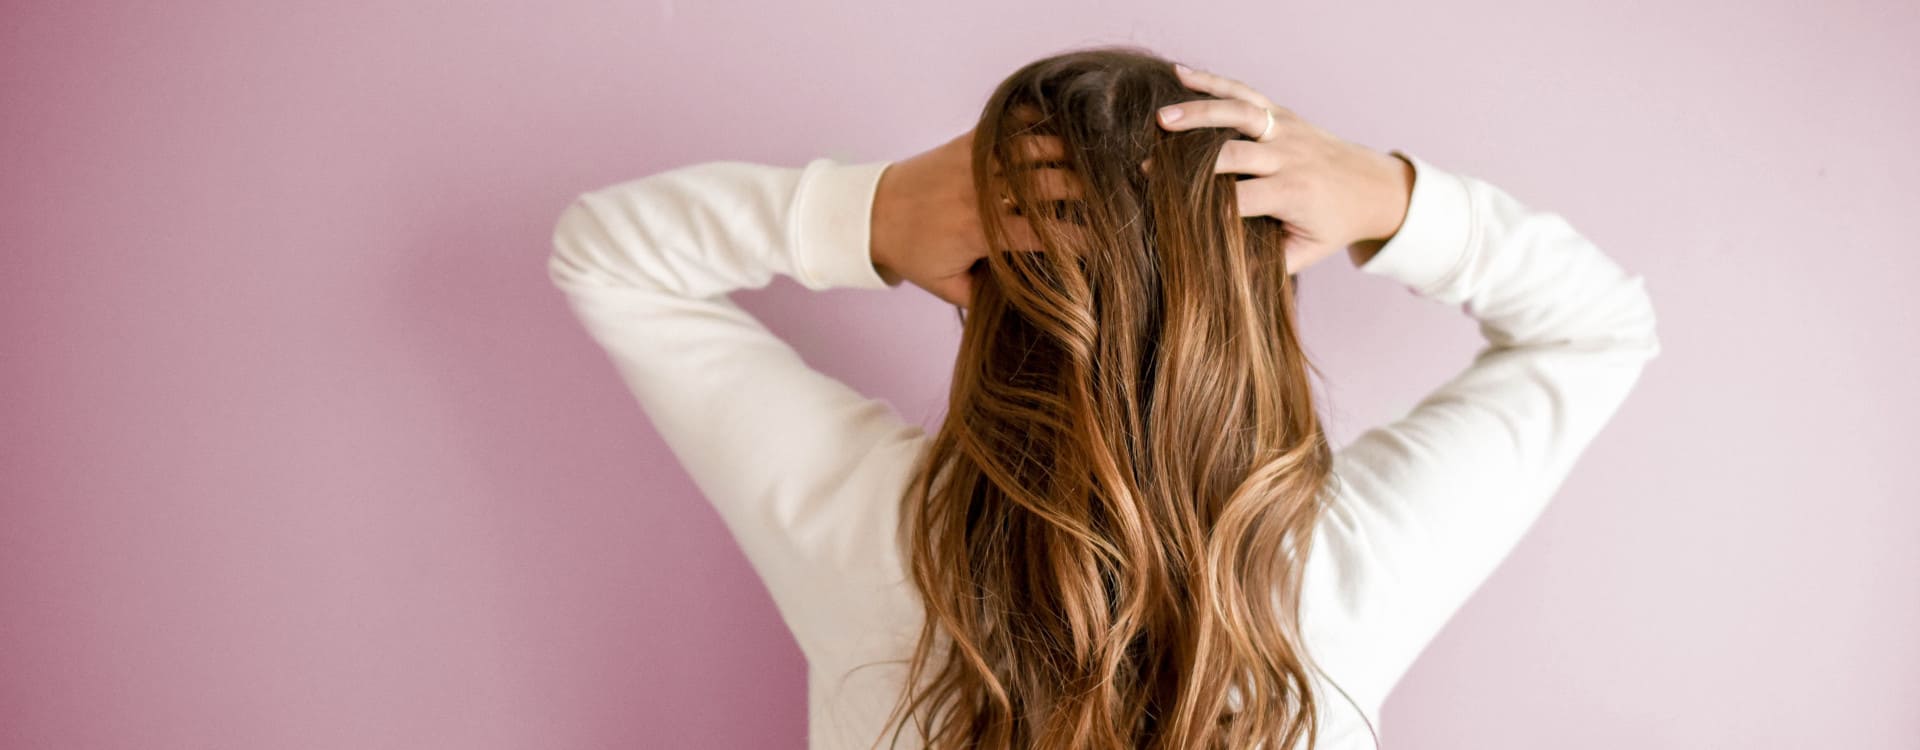 Come capire se la caduta dei capelli è normale? - Una donna di spalle e in piedi davanti a un muro rosa si tocca i capelli